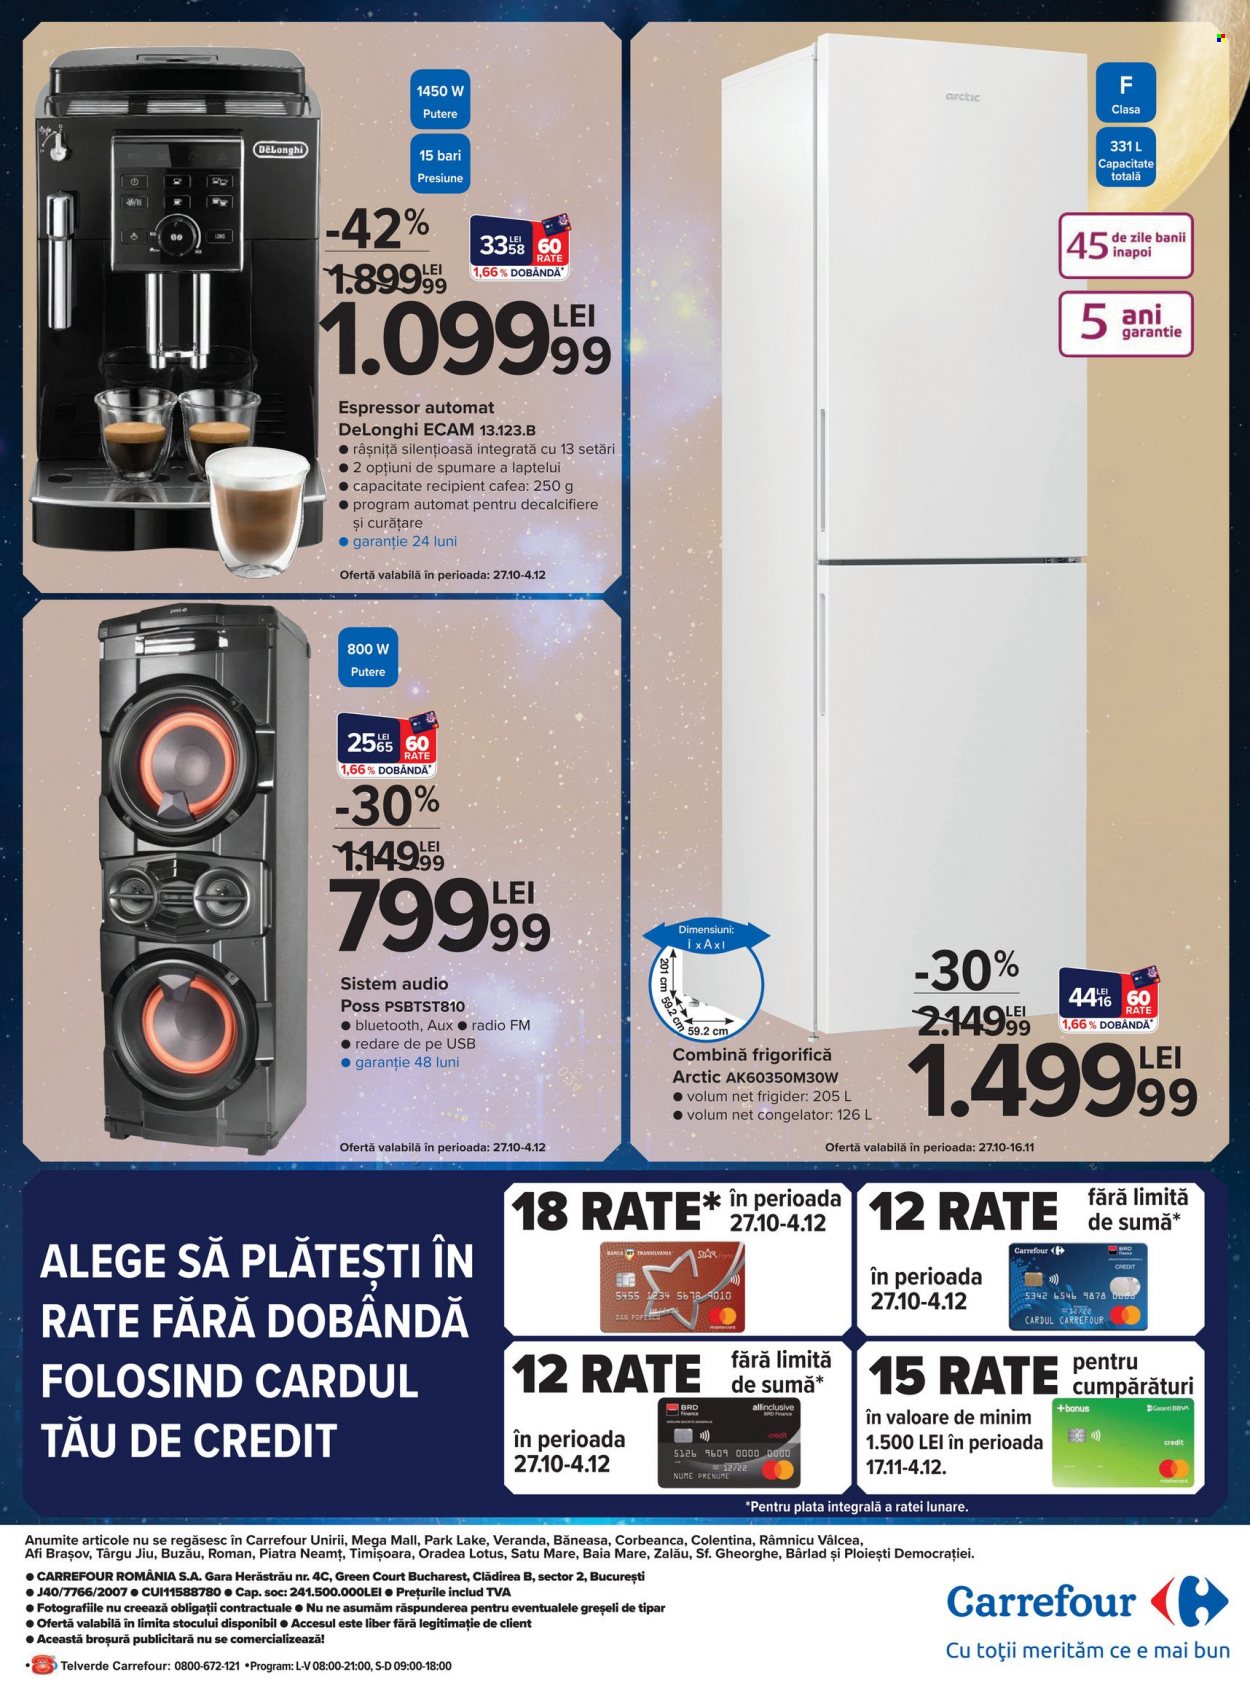 thumbnail - Cataloage Carrefour - 27.10.2022 - 04.12.2022 - Produse în vânzare - De'Longhi, cafea, sistem audio, combina frigorifica, congelator, frigider, espressor, bancă. Pagina 28.